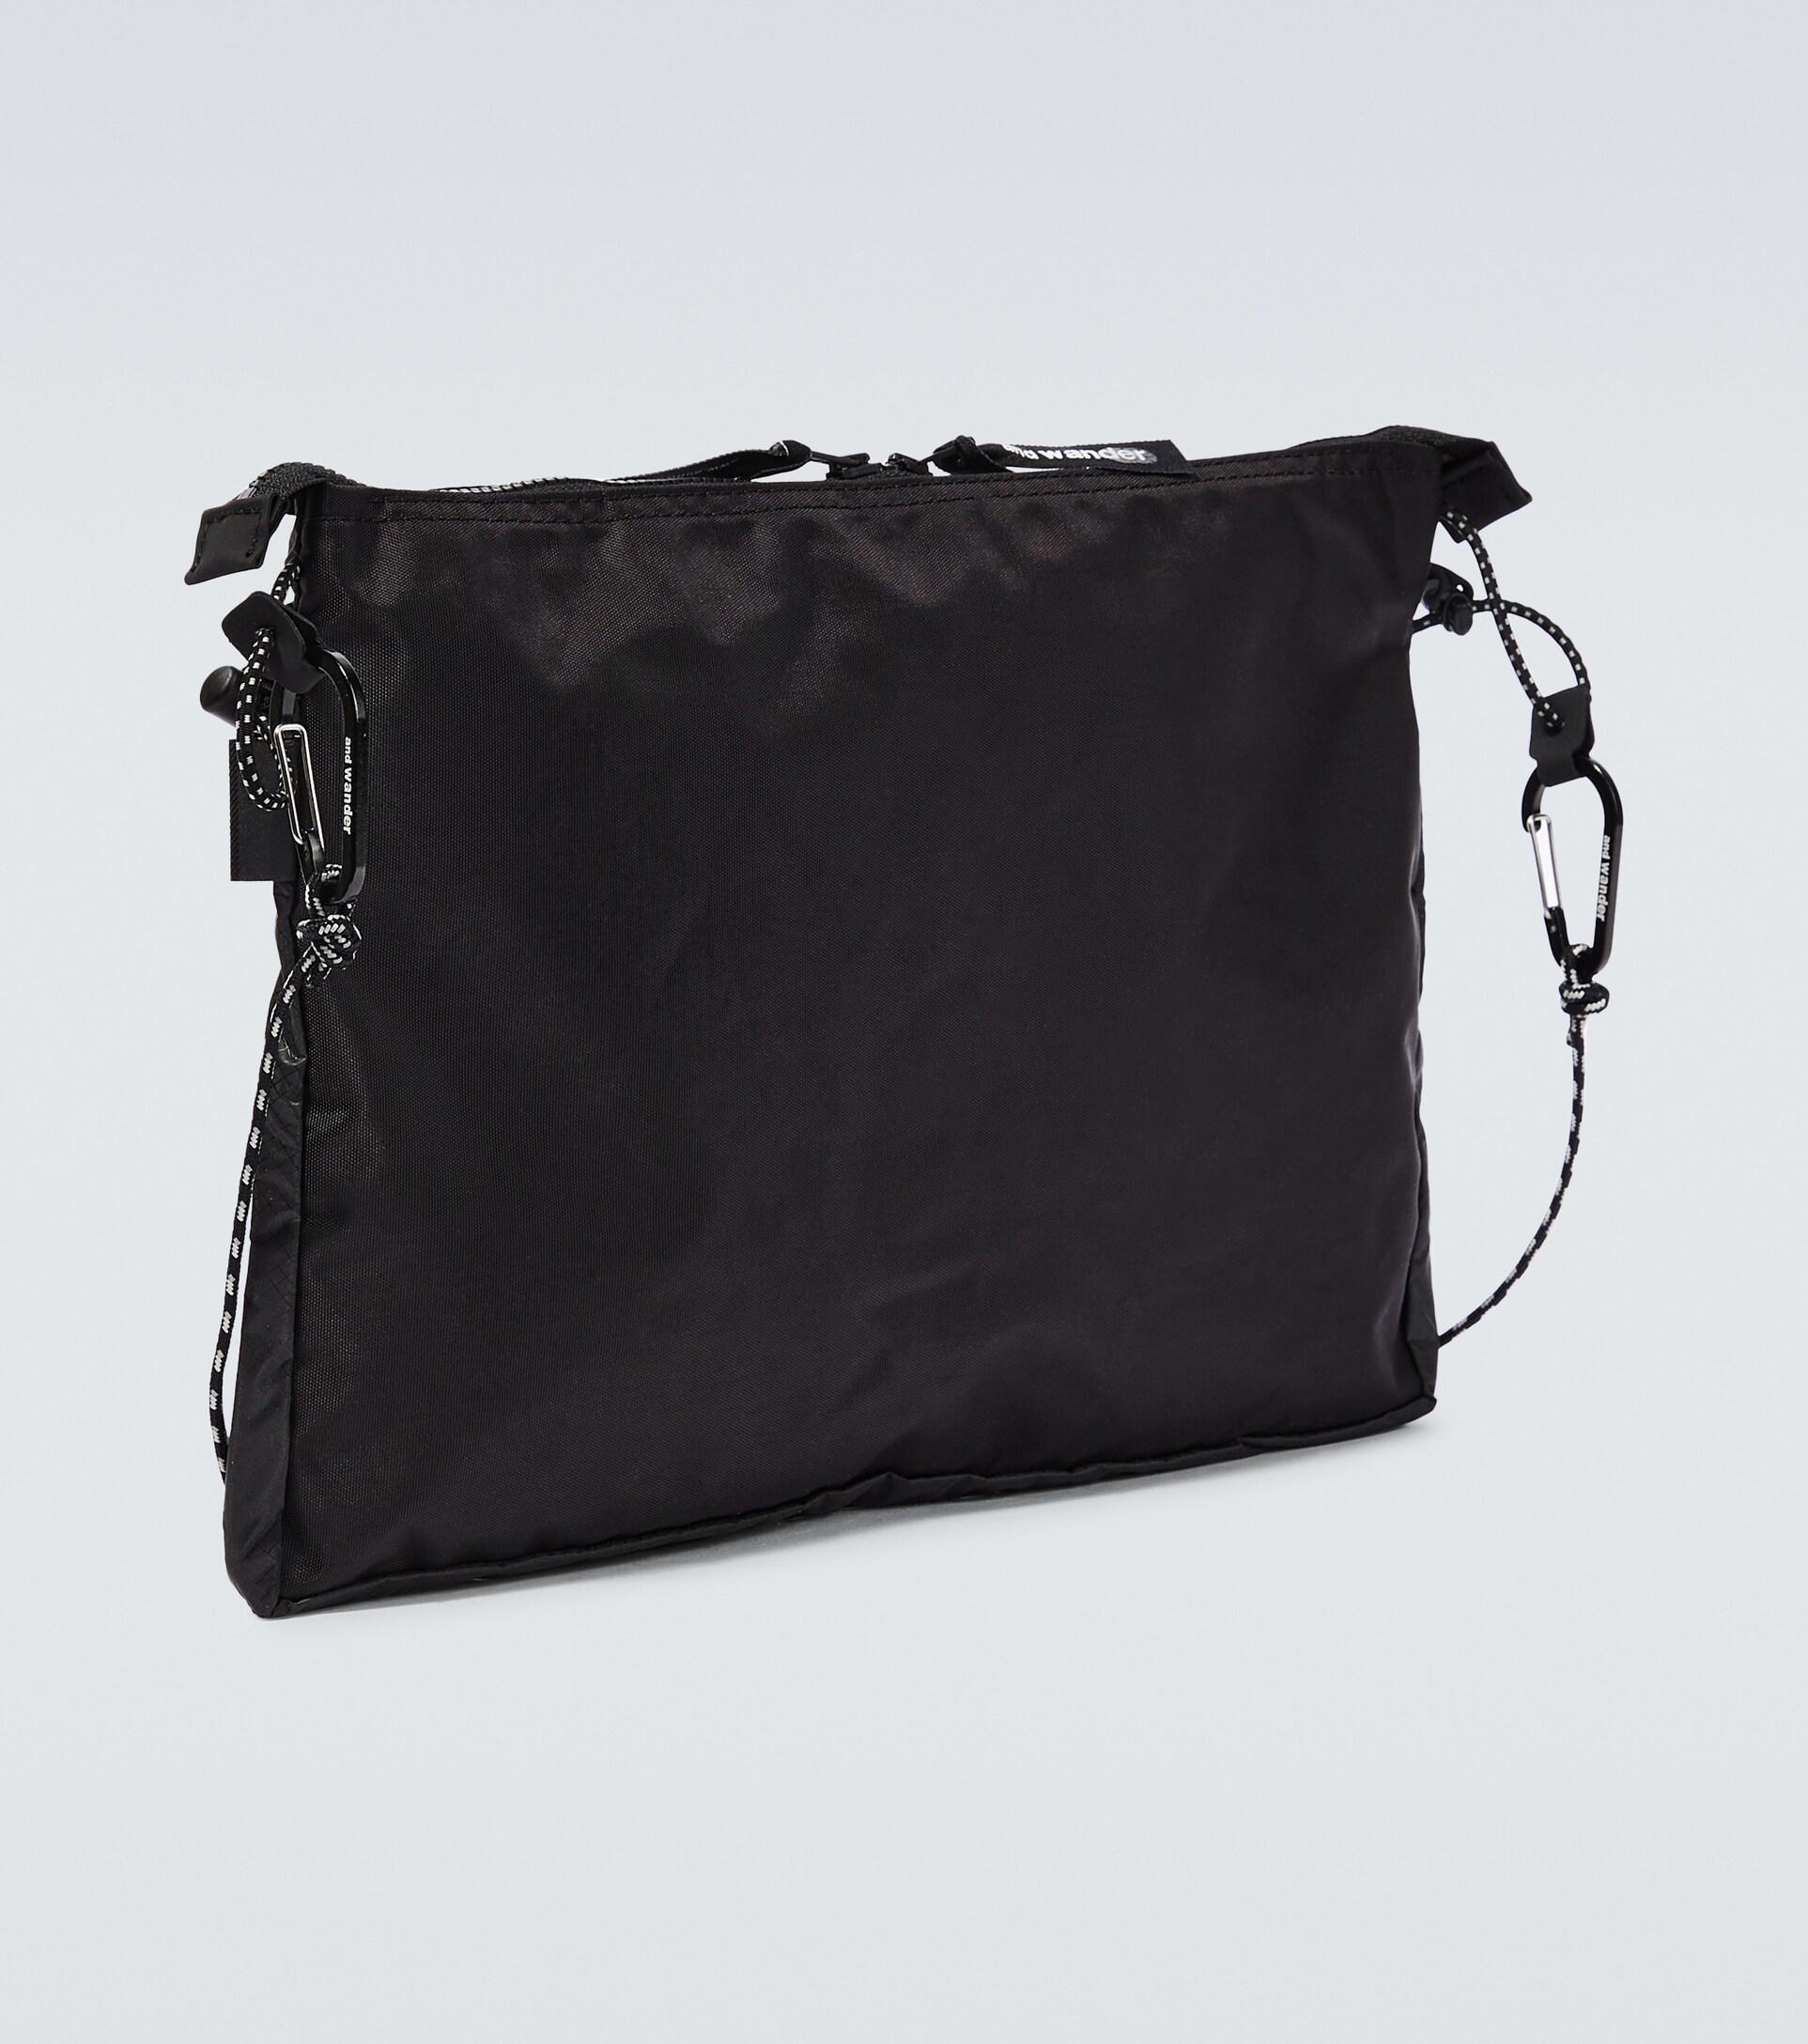 Grey Water Resistant Nylon Messenger Bag Shoulder Bag -  Finland